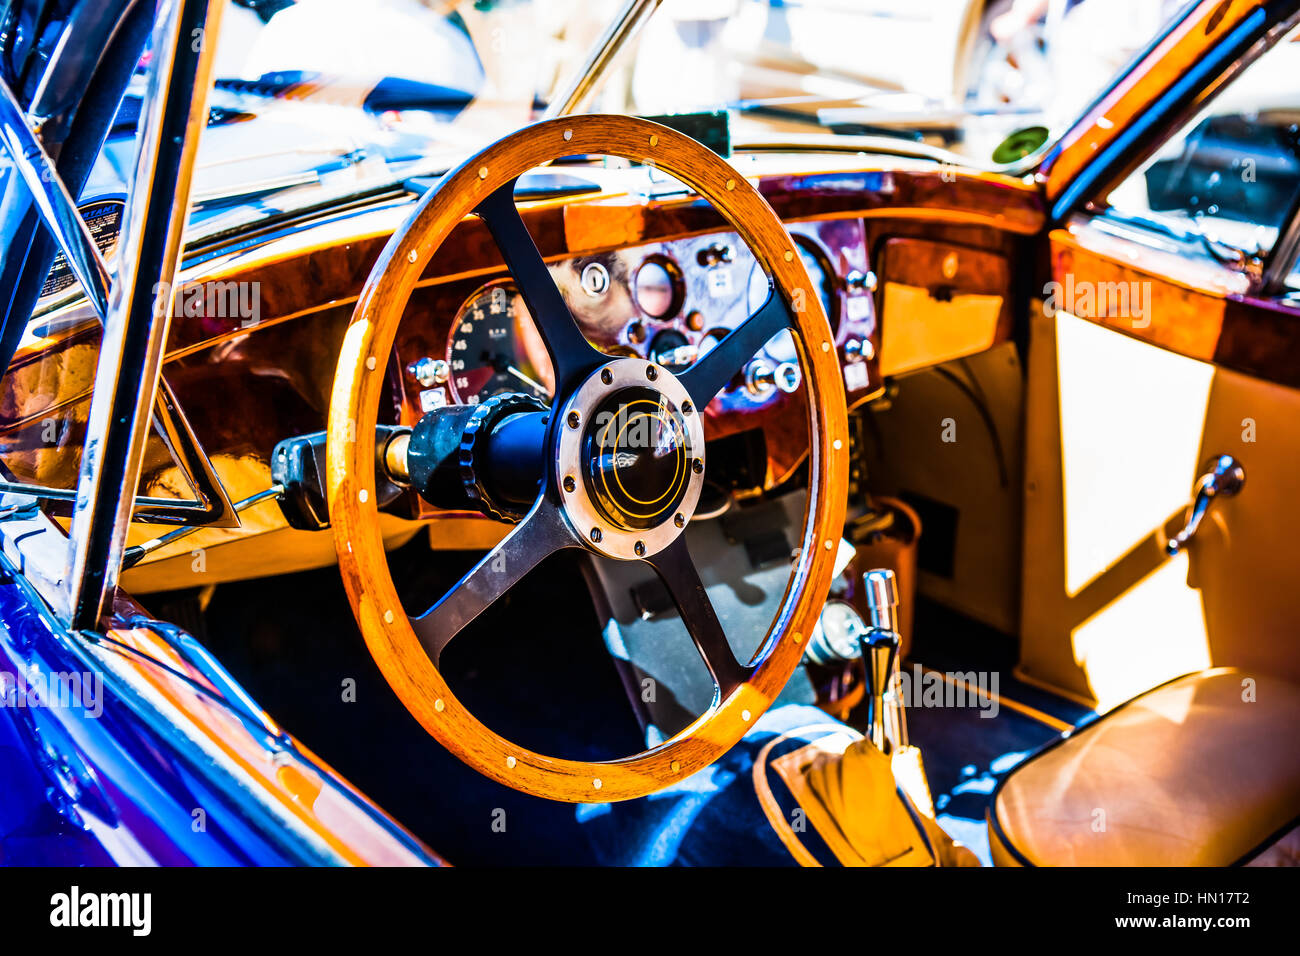 La couleur et la beauté des vieilles voitures. Volant en bois et d'un tableau de bord d'une vieille voiture de sport de luxe. Banque D'Images